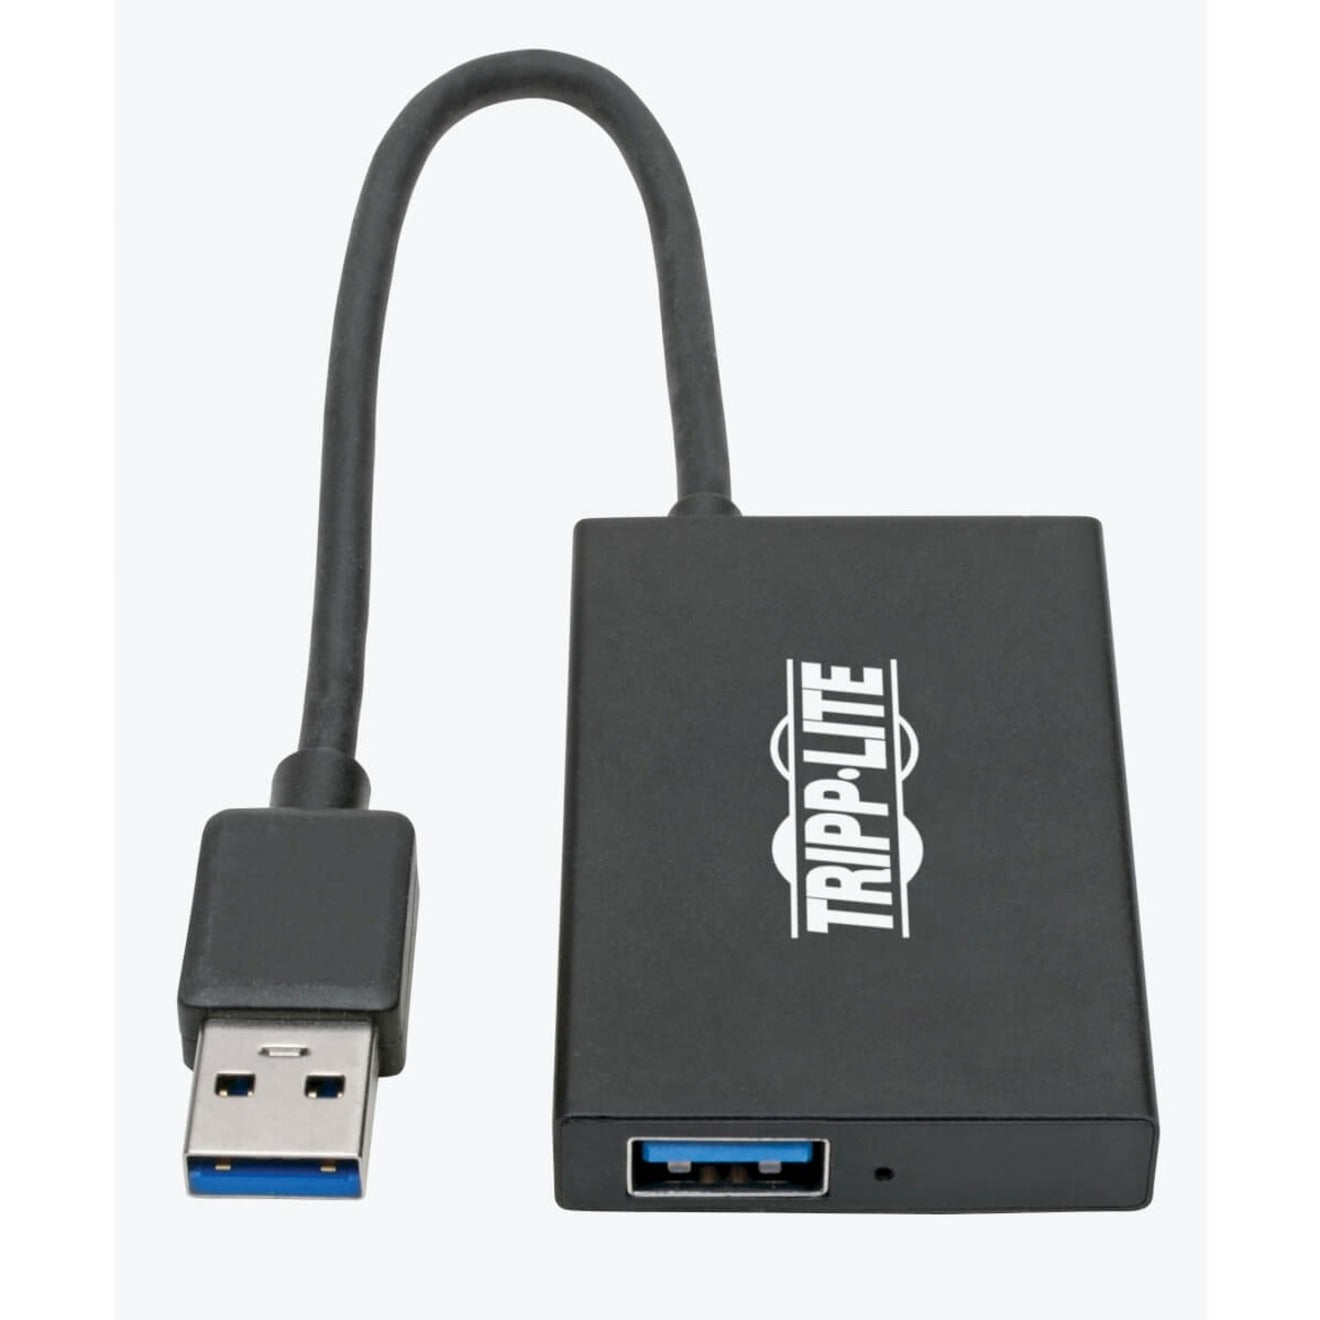 特里普利特 U360-004-4A-AL USB 3.0超高速超薄型集线器，4个USB-A端口，便携式，铝制 特里普利特